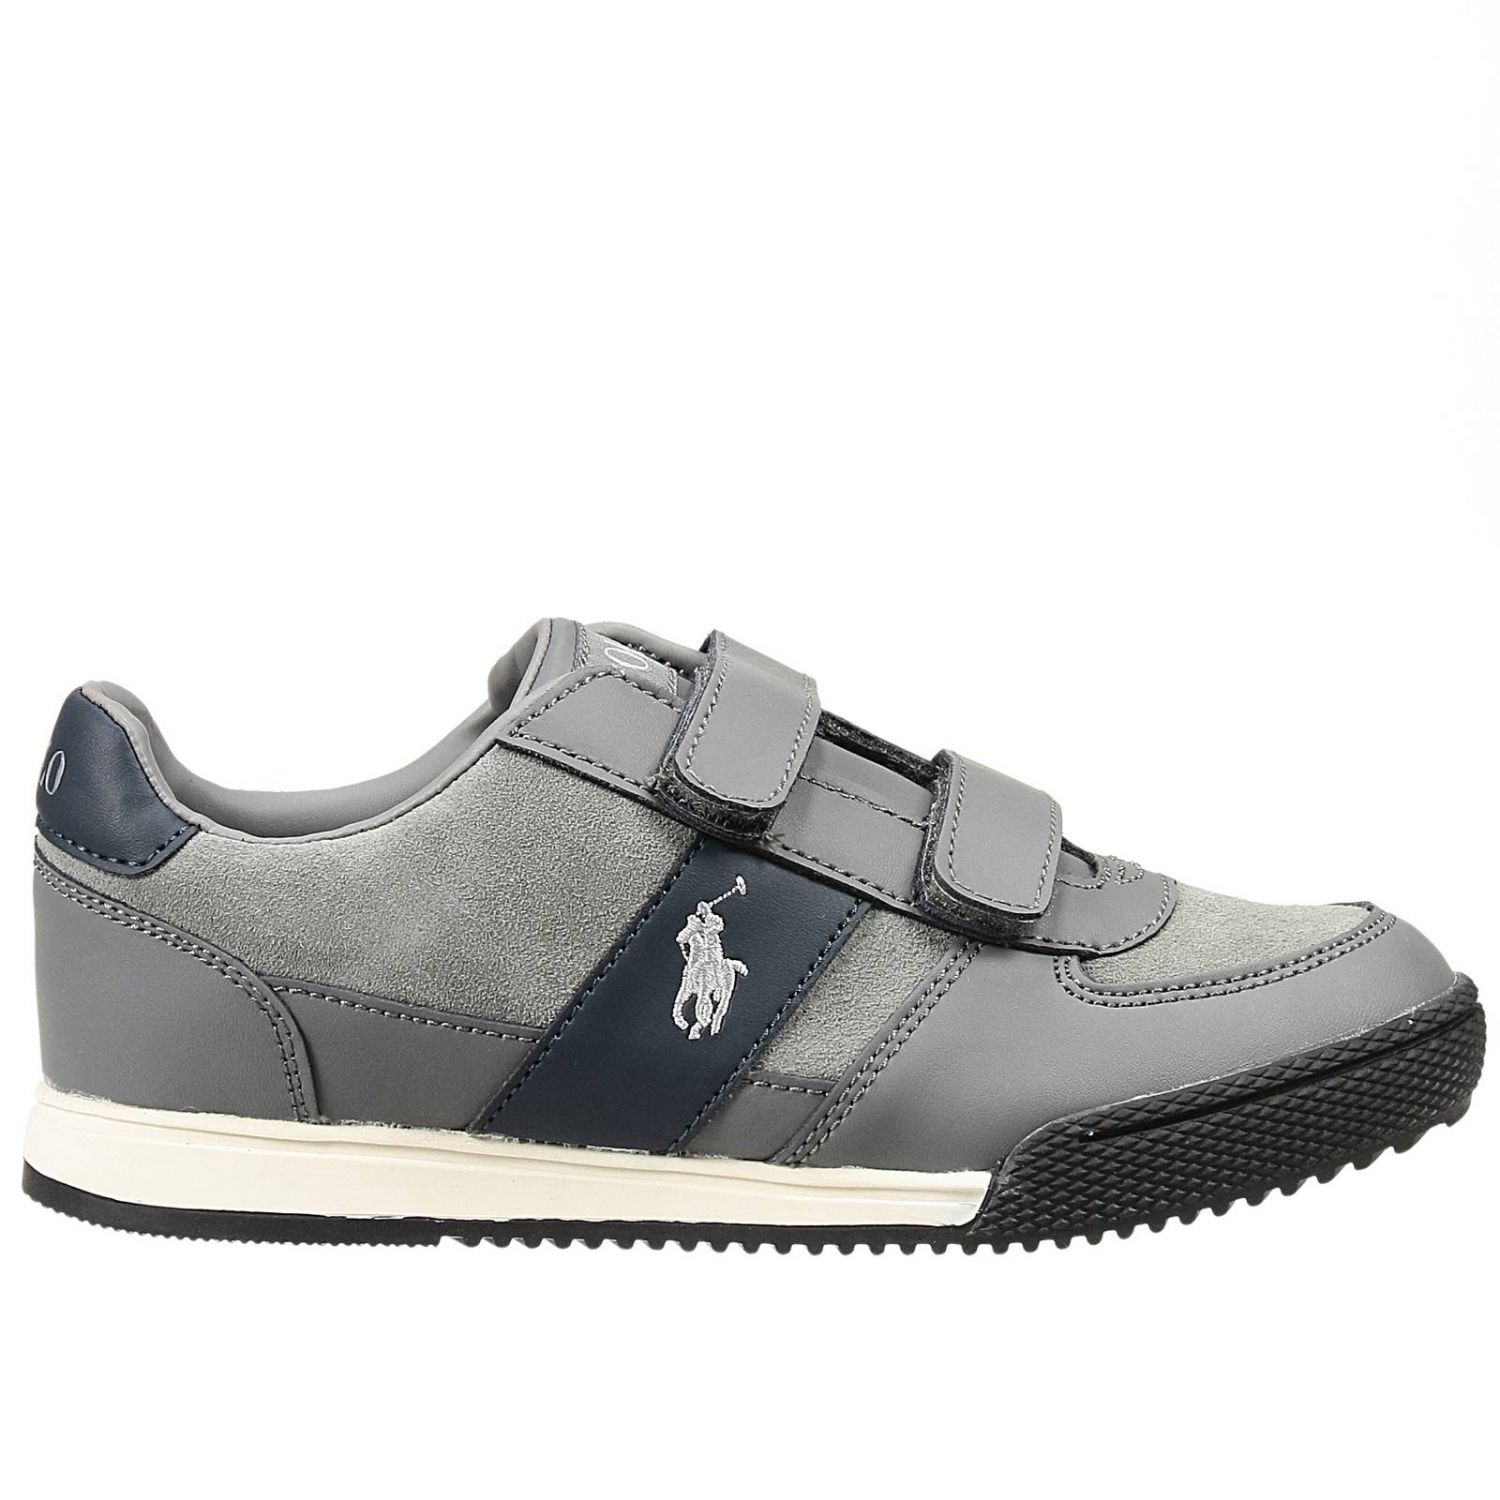 grey ralph lauren shoes